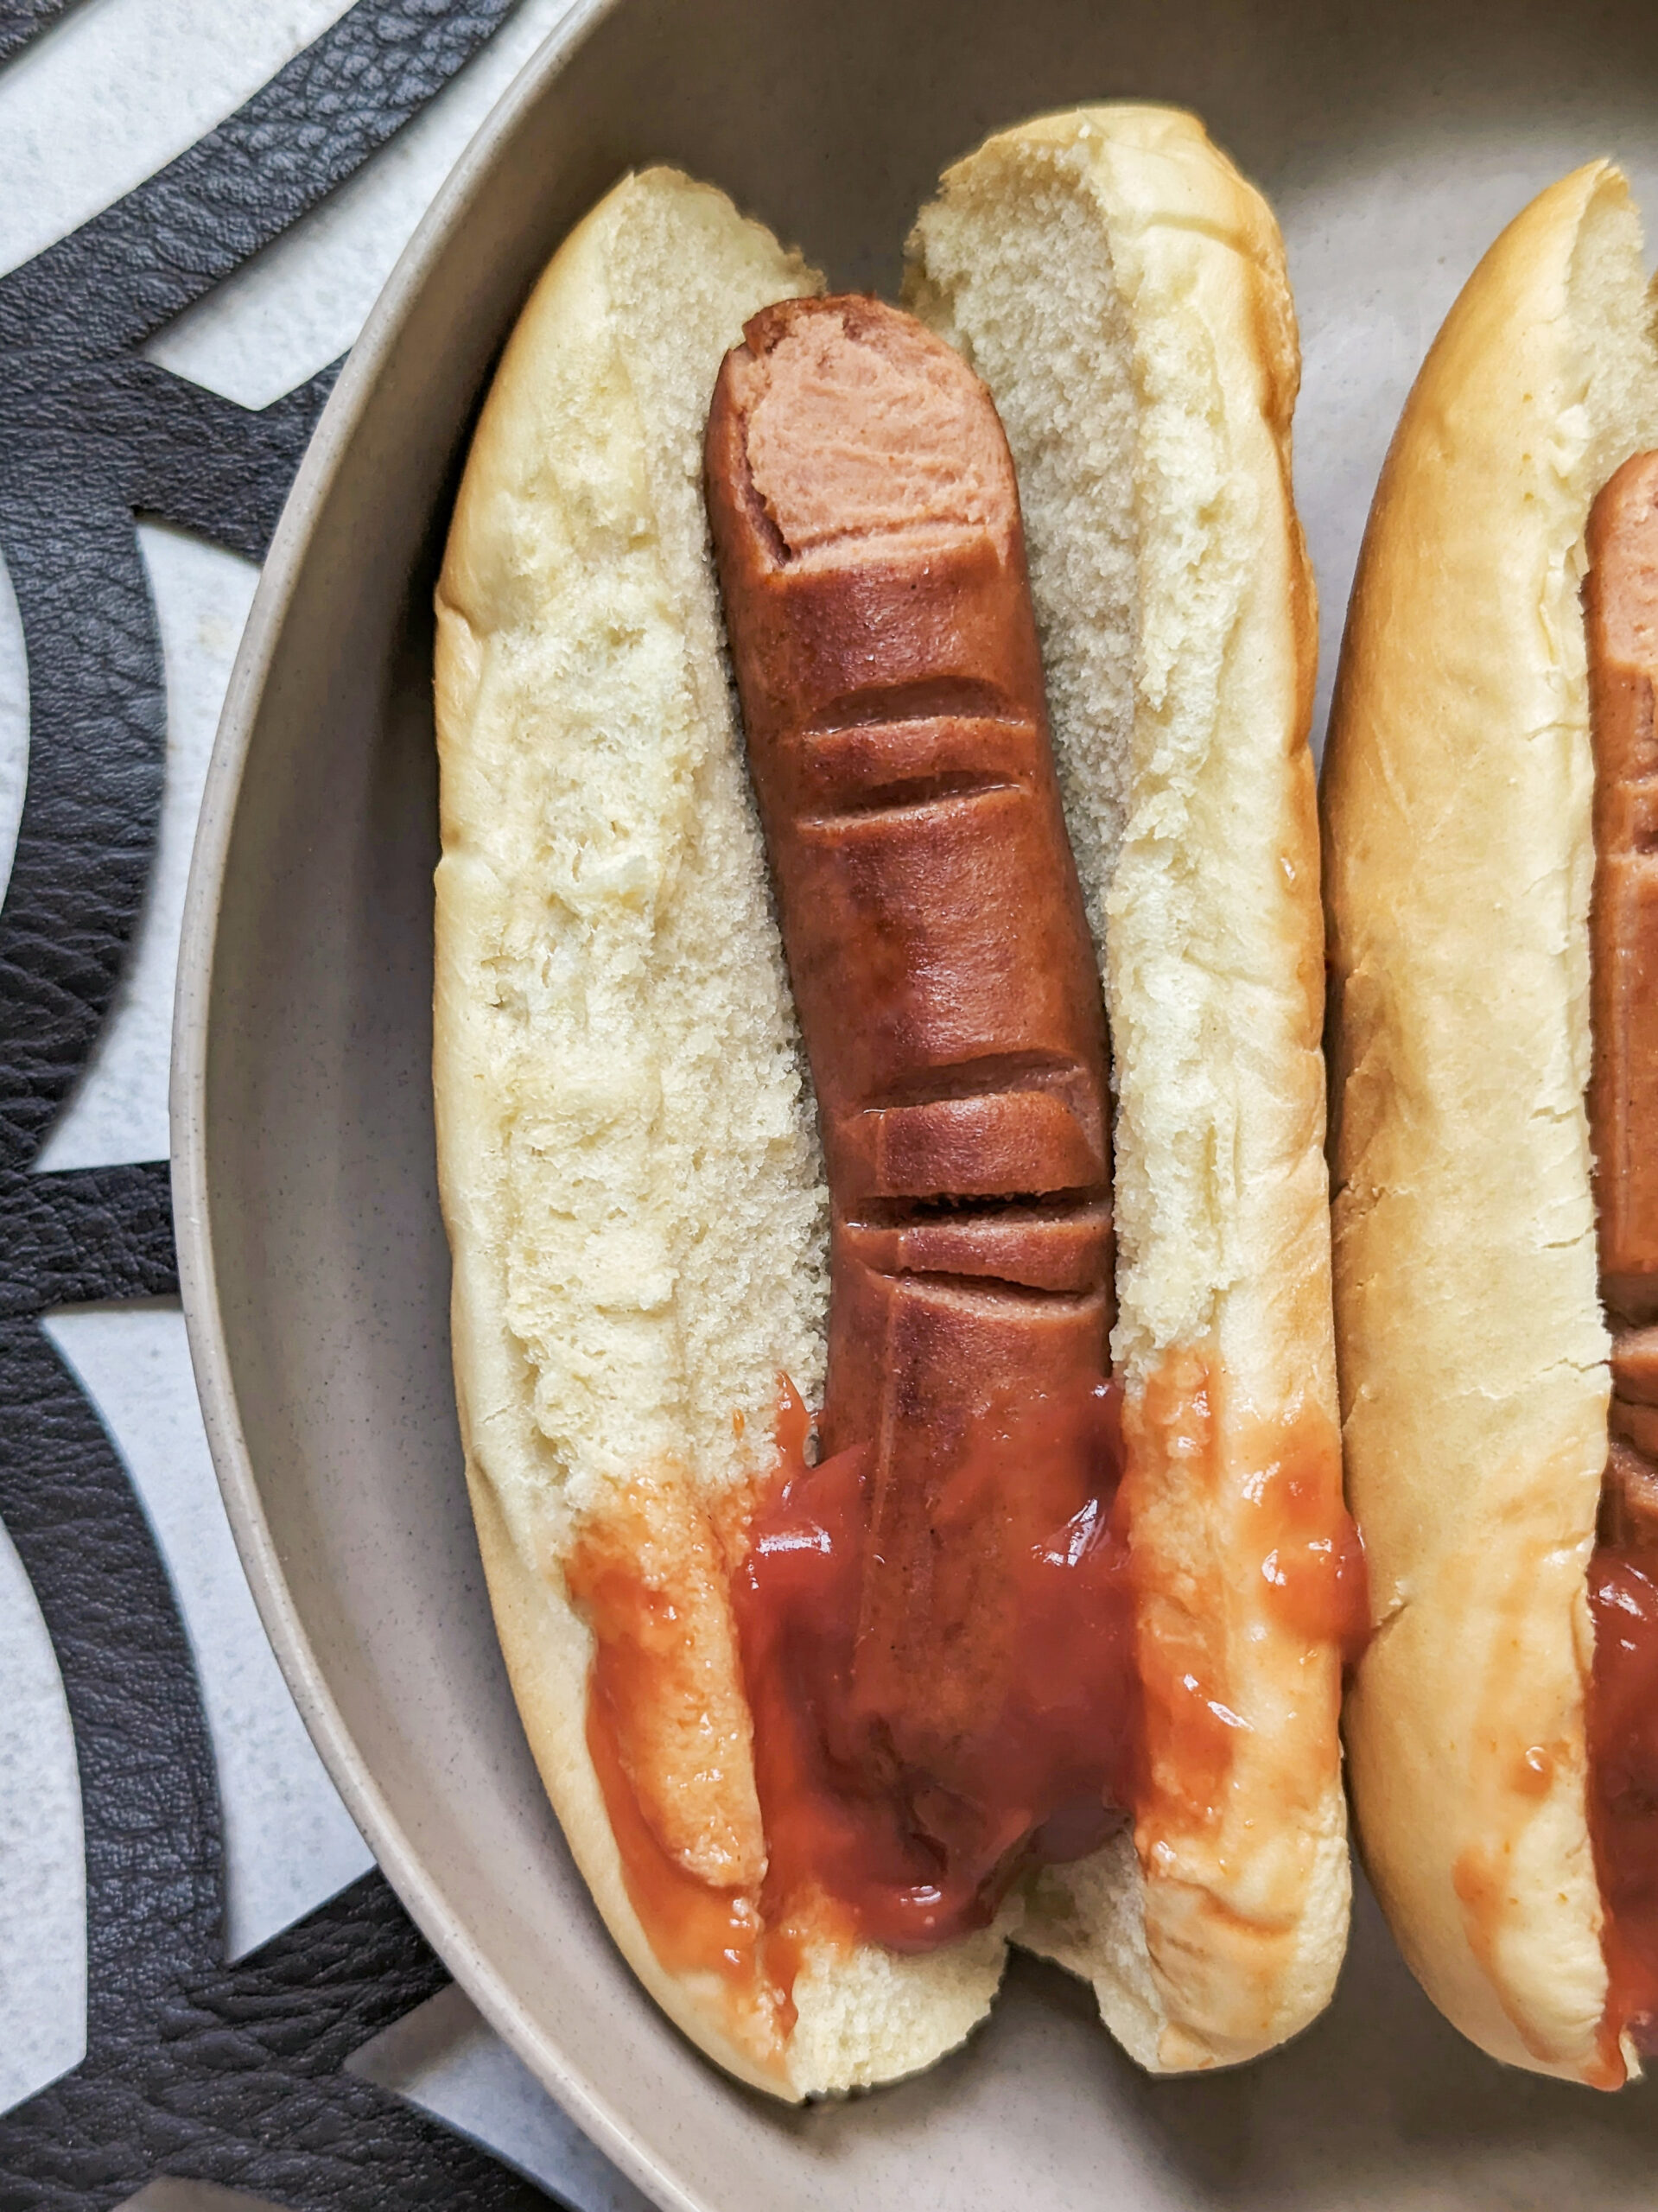 Halloween Hotdog Fingers in between hotdog buns with ketchup.